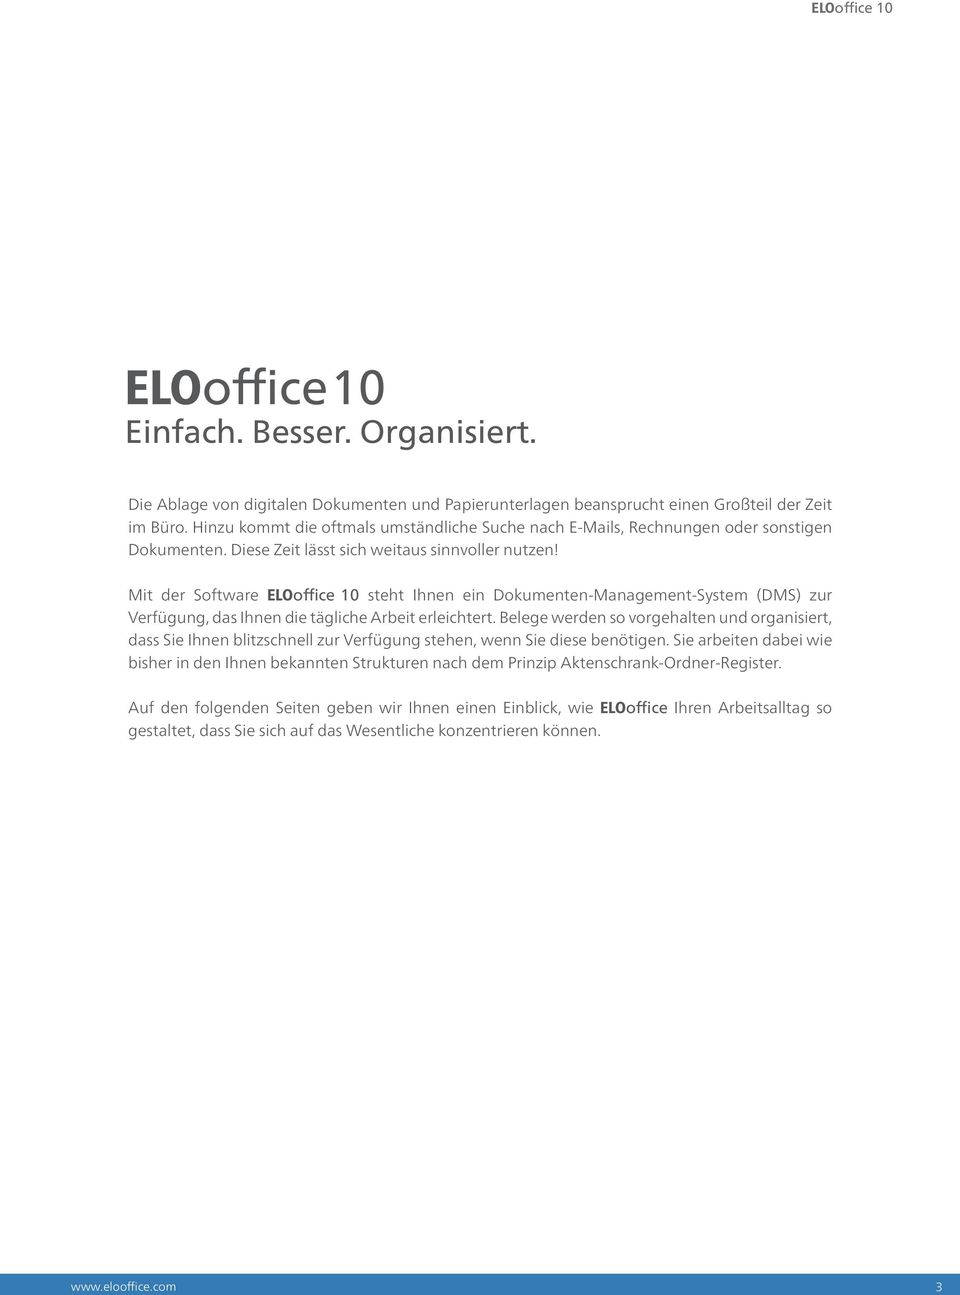 Mit der Software ELOoffice 10 steht Ihnen ein Dokumenten-Management-System (DMS) zur Verfügung, das Ihnen die tägliche Arbeit erleichtert.